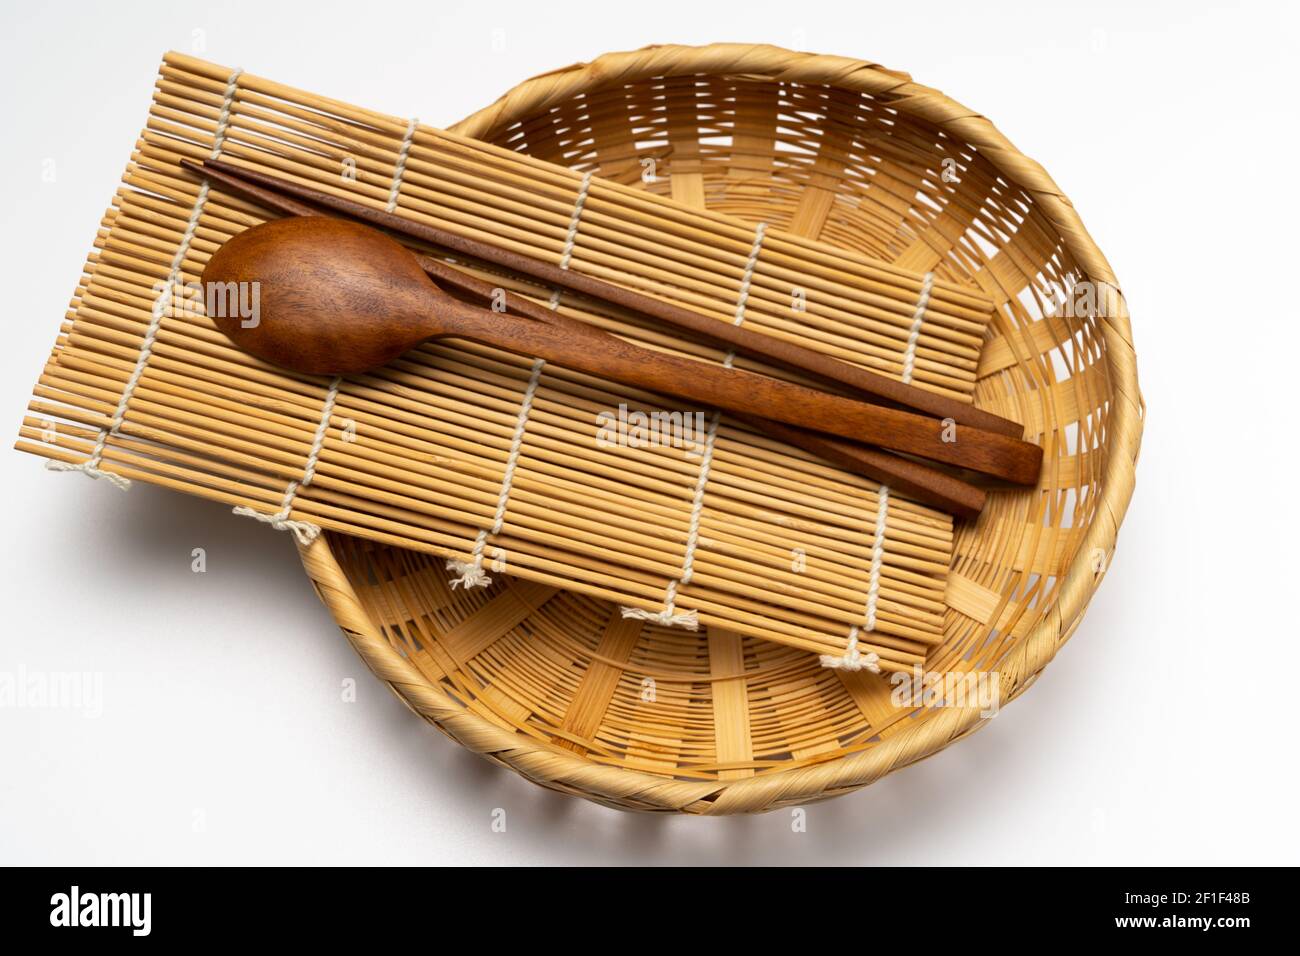 Wooden cutlery, wooden chopsticks, bamboo basket, bamboo mat Stock Photo